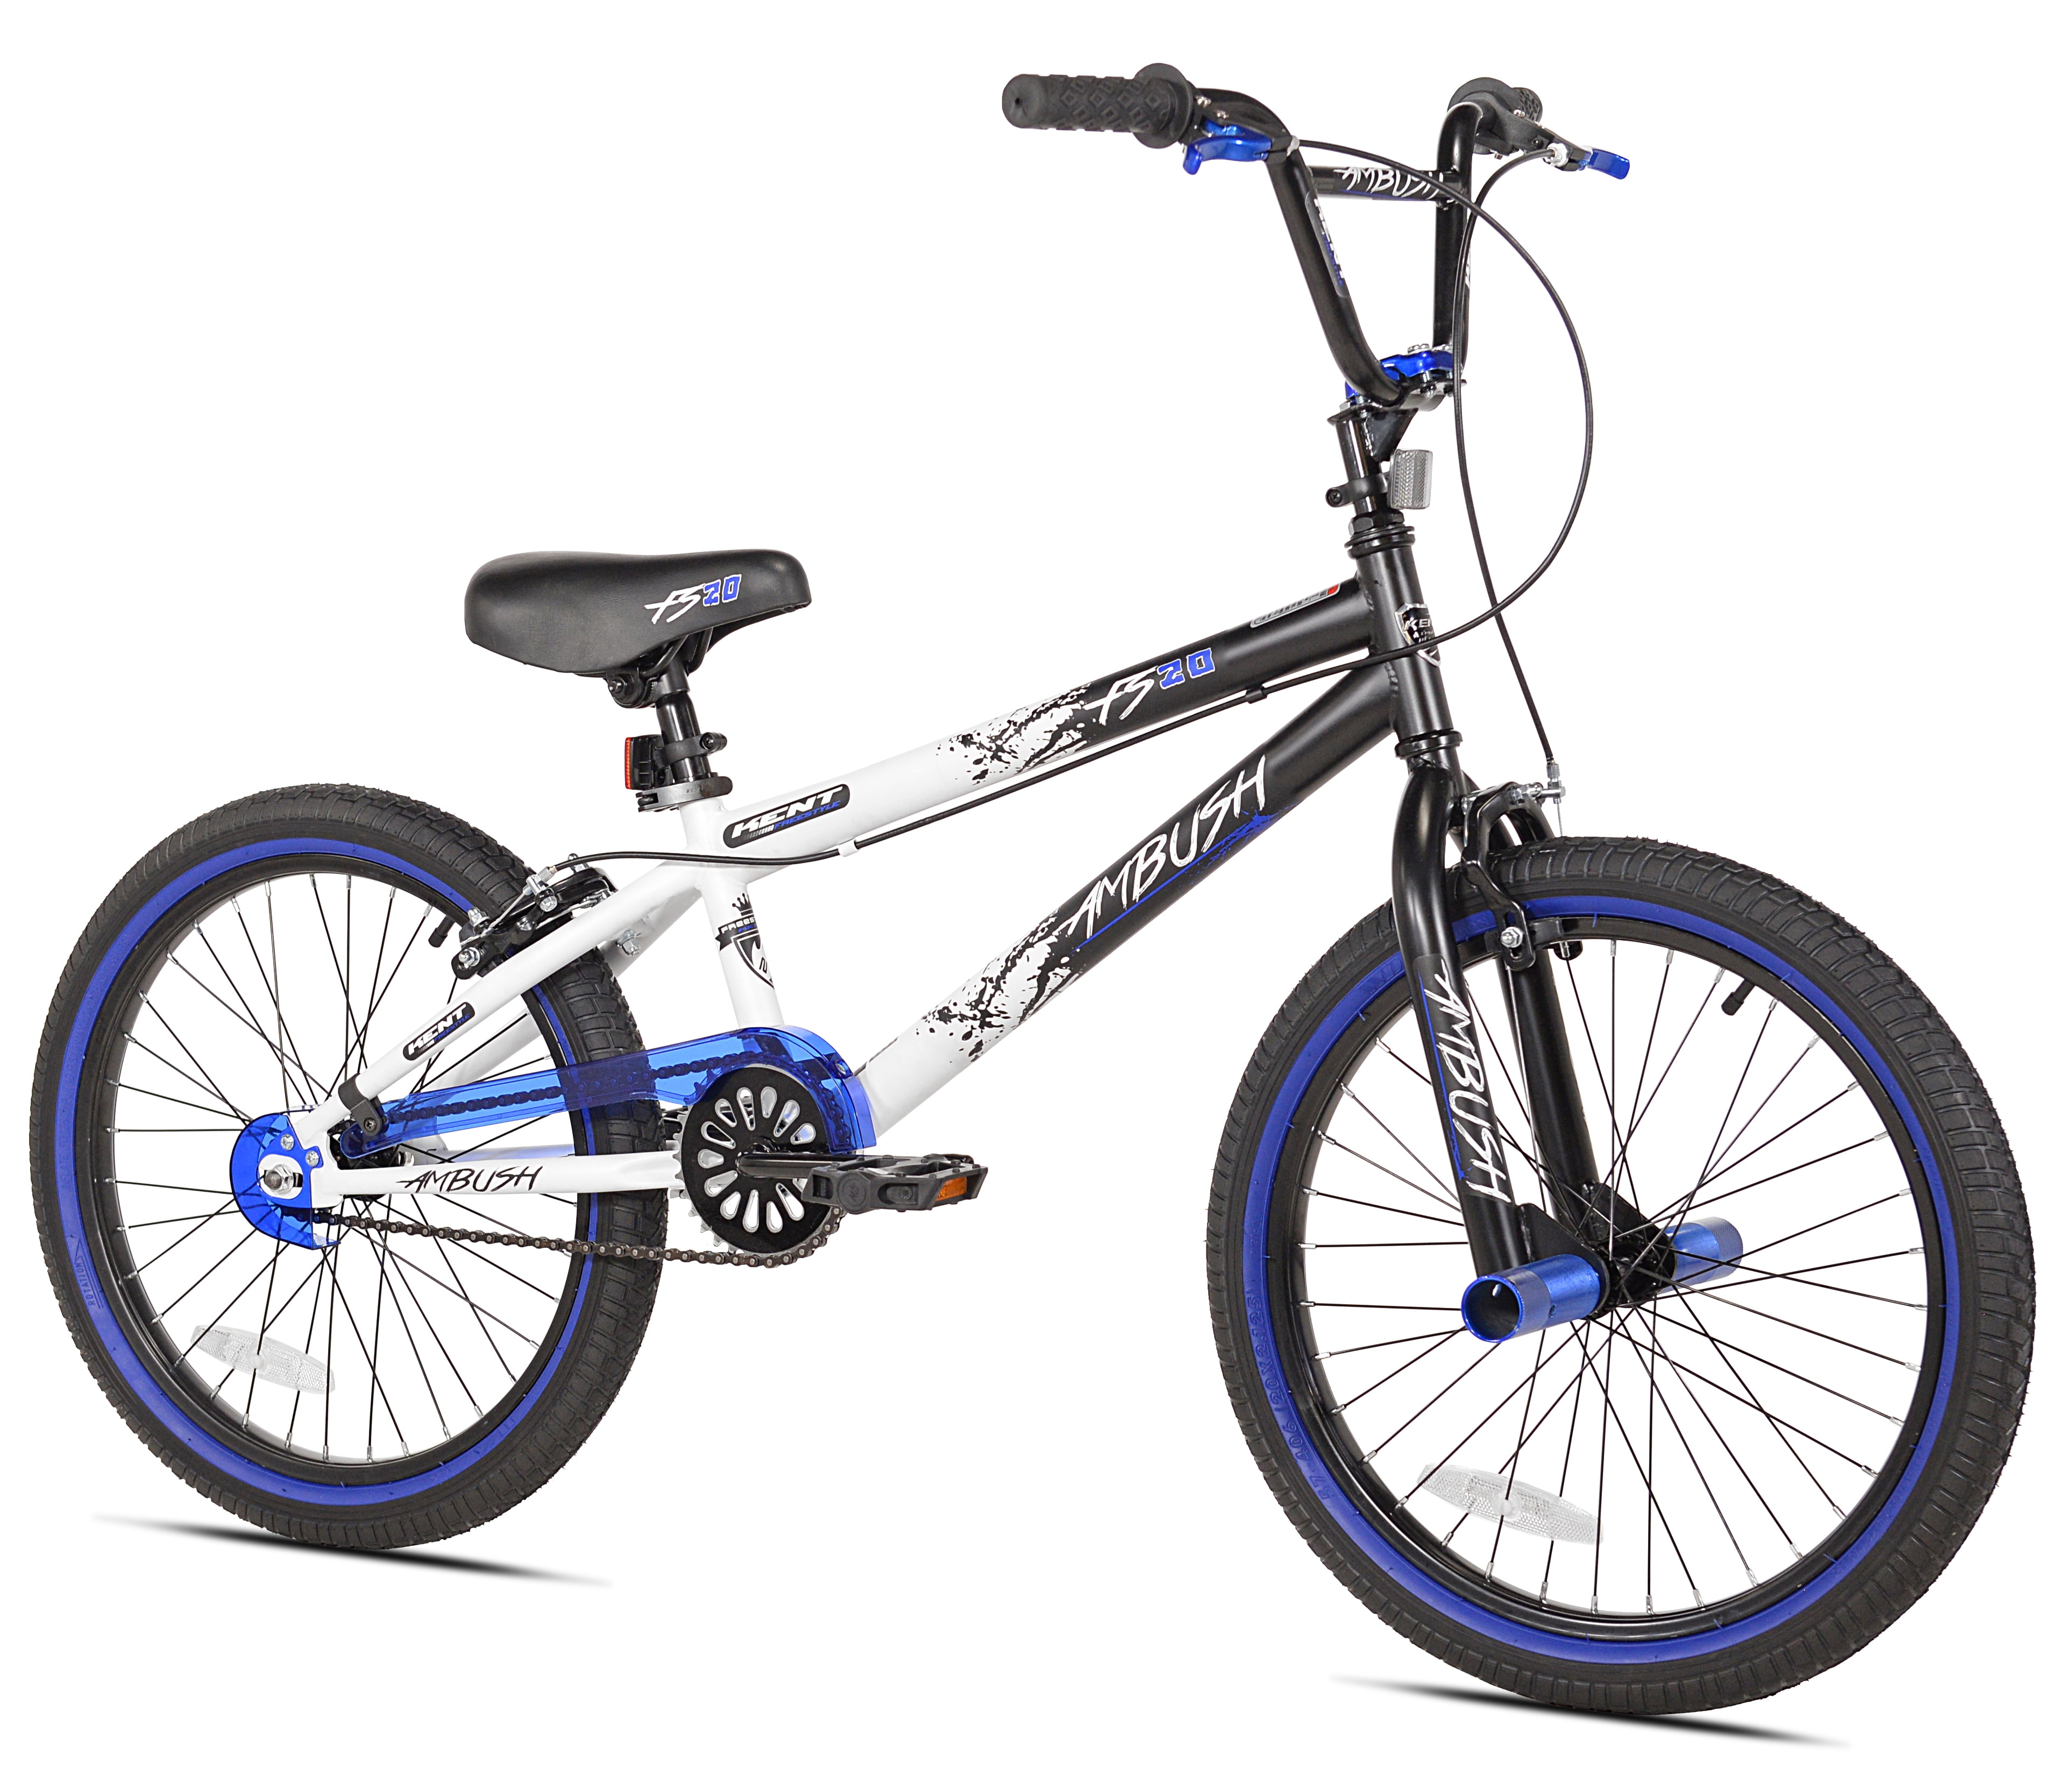 Kent Bicycles 20" Boy's Ambush BMX Bike, Black/Blue